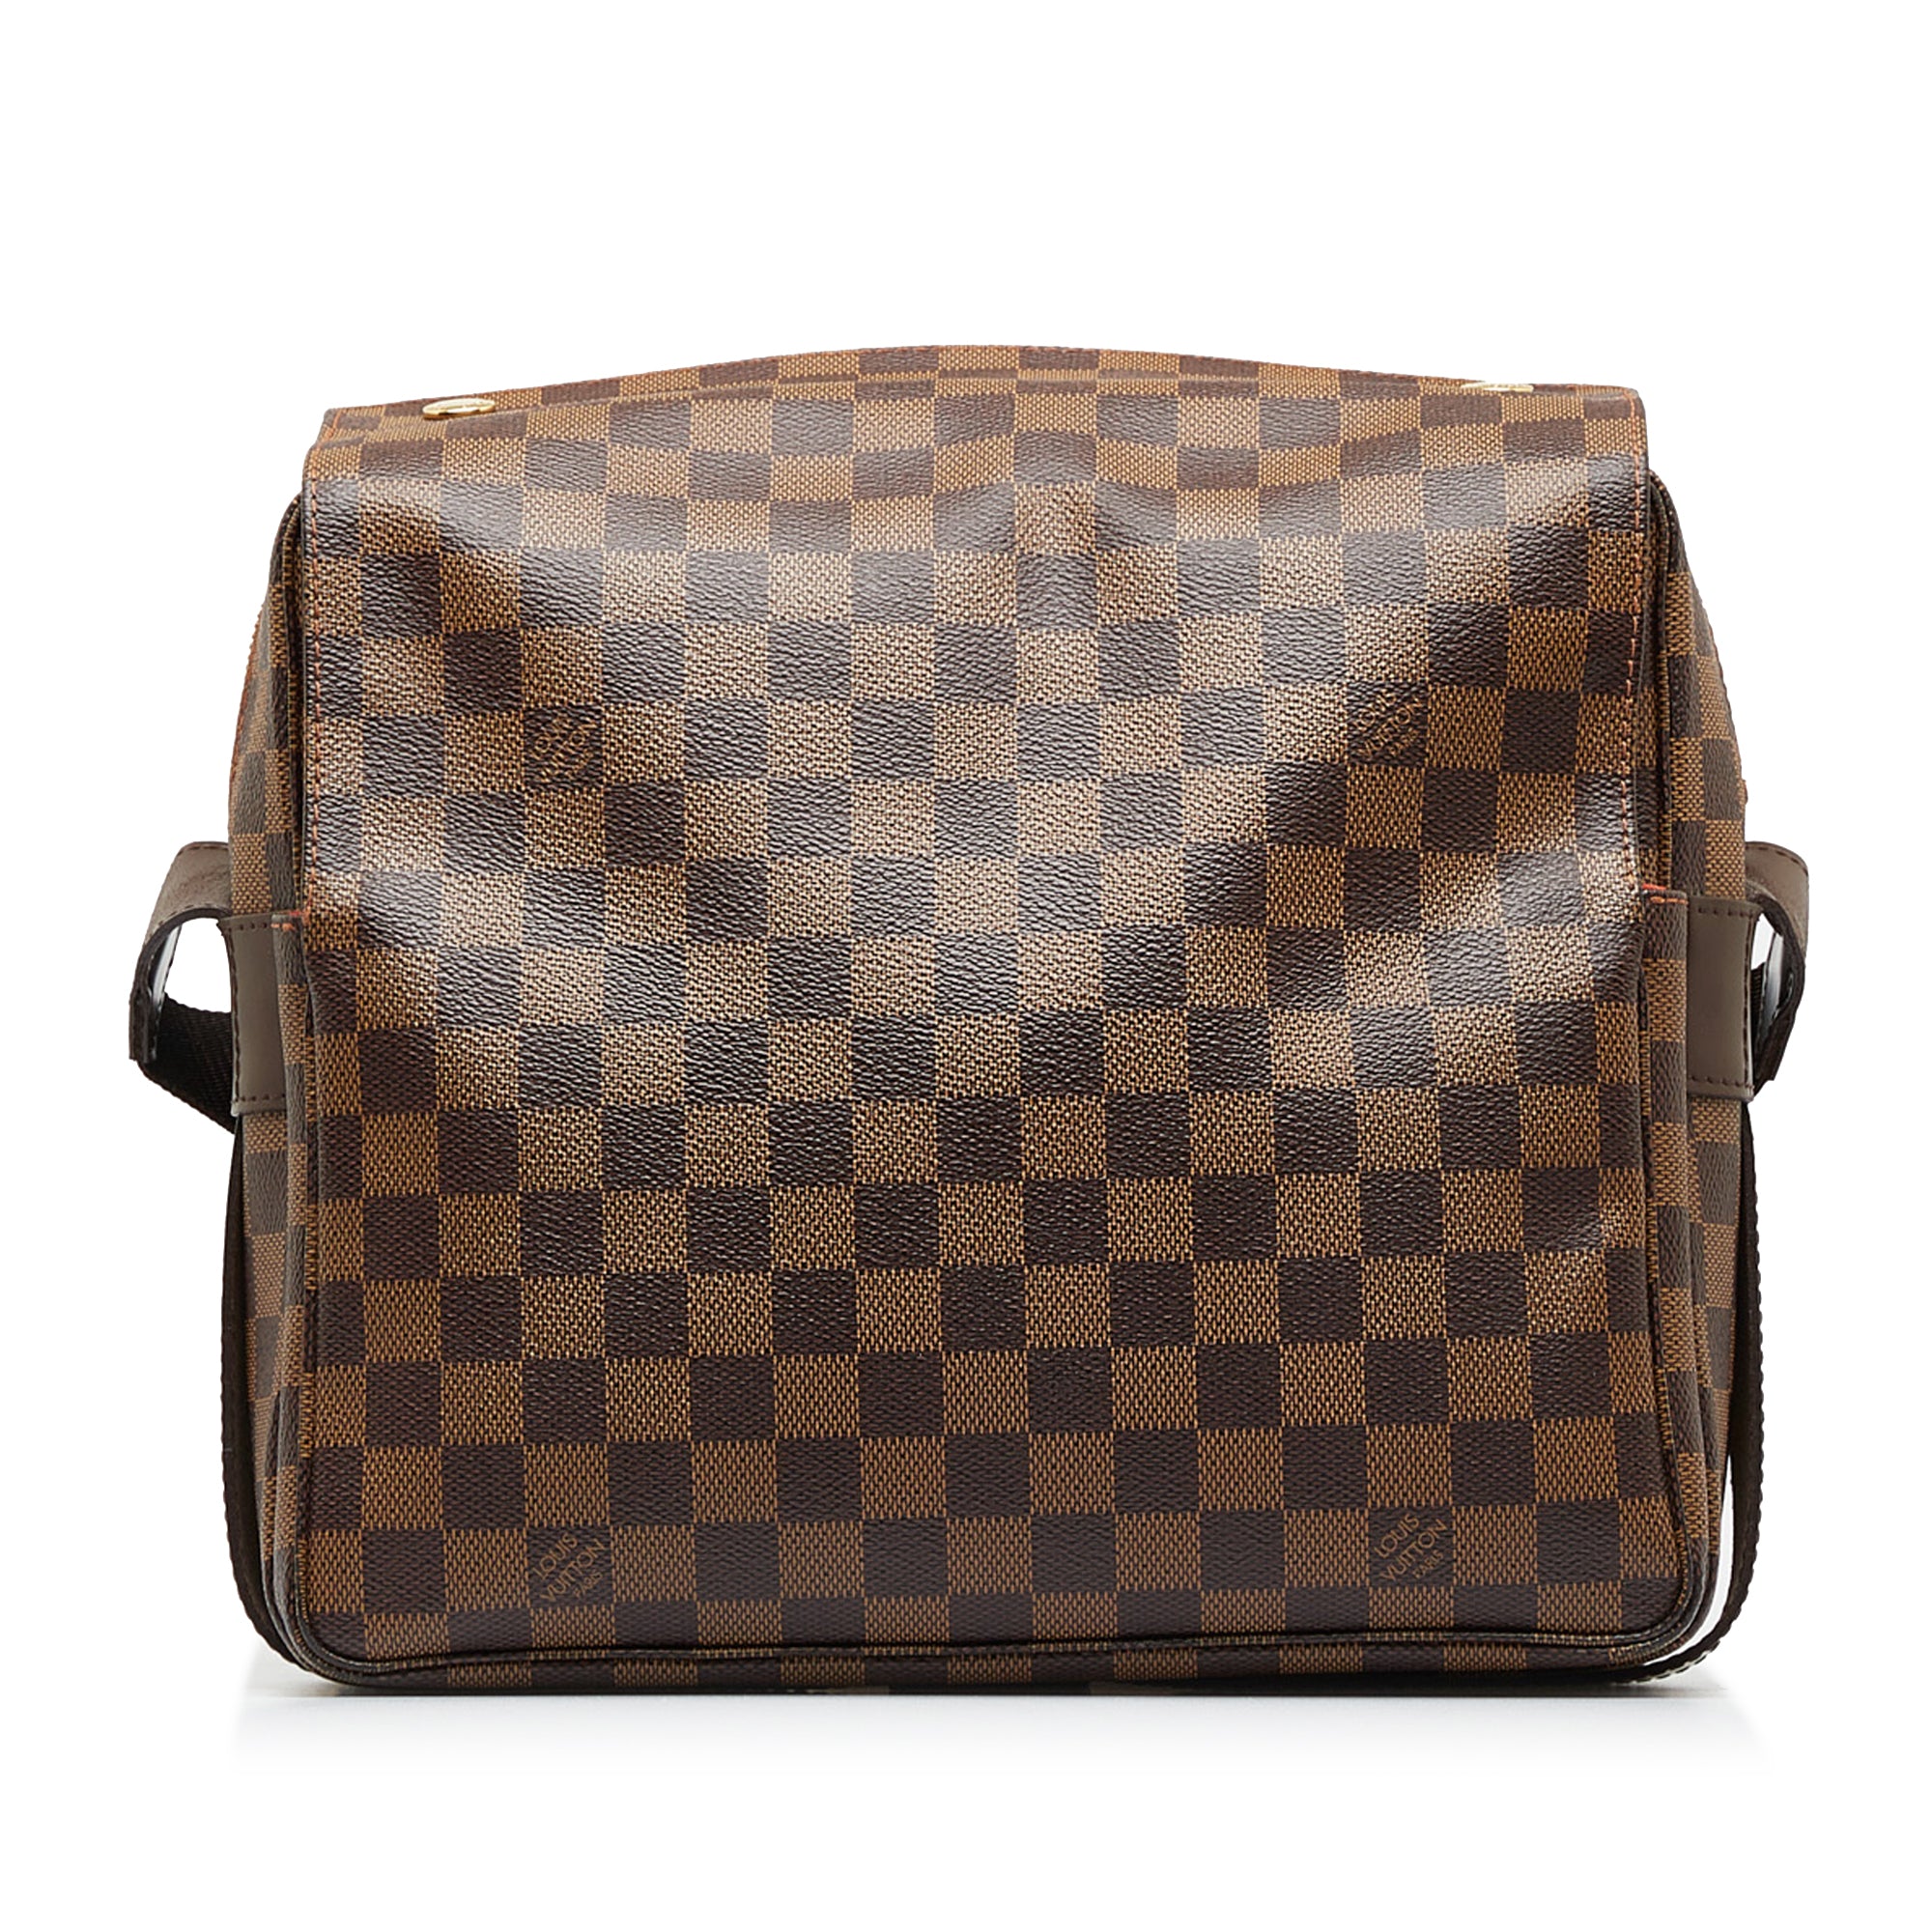 Authentic Louis Vuitton Damier Naviglio Shoulder Cross Body Bag